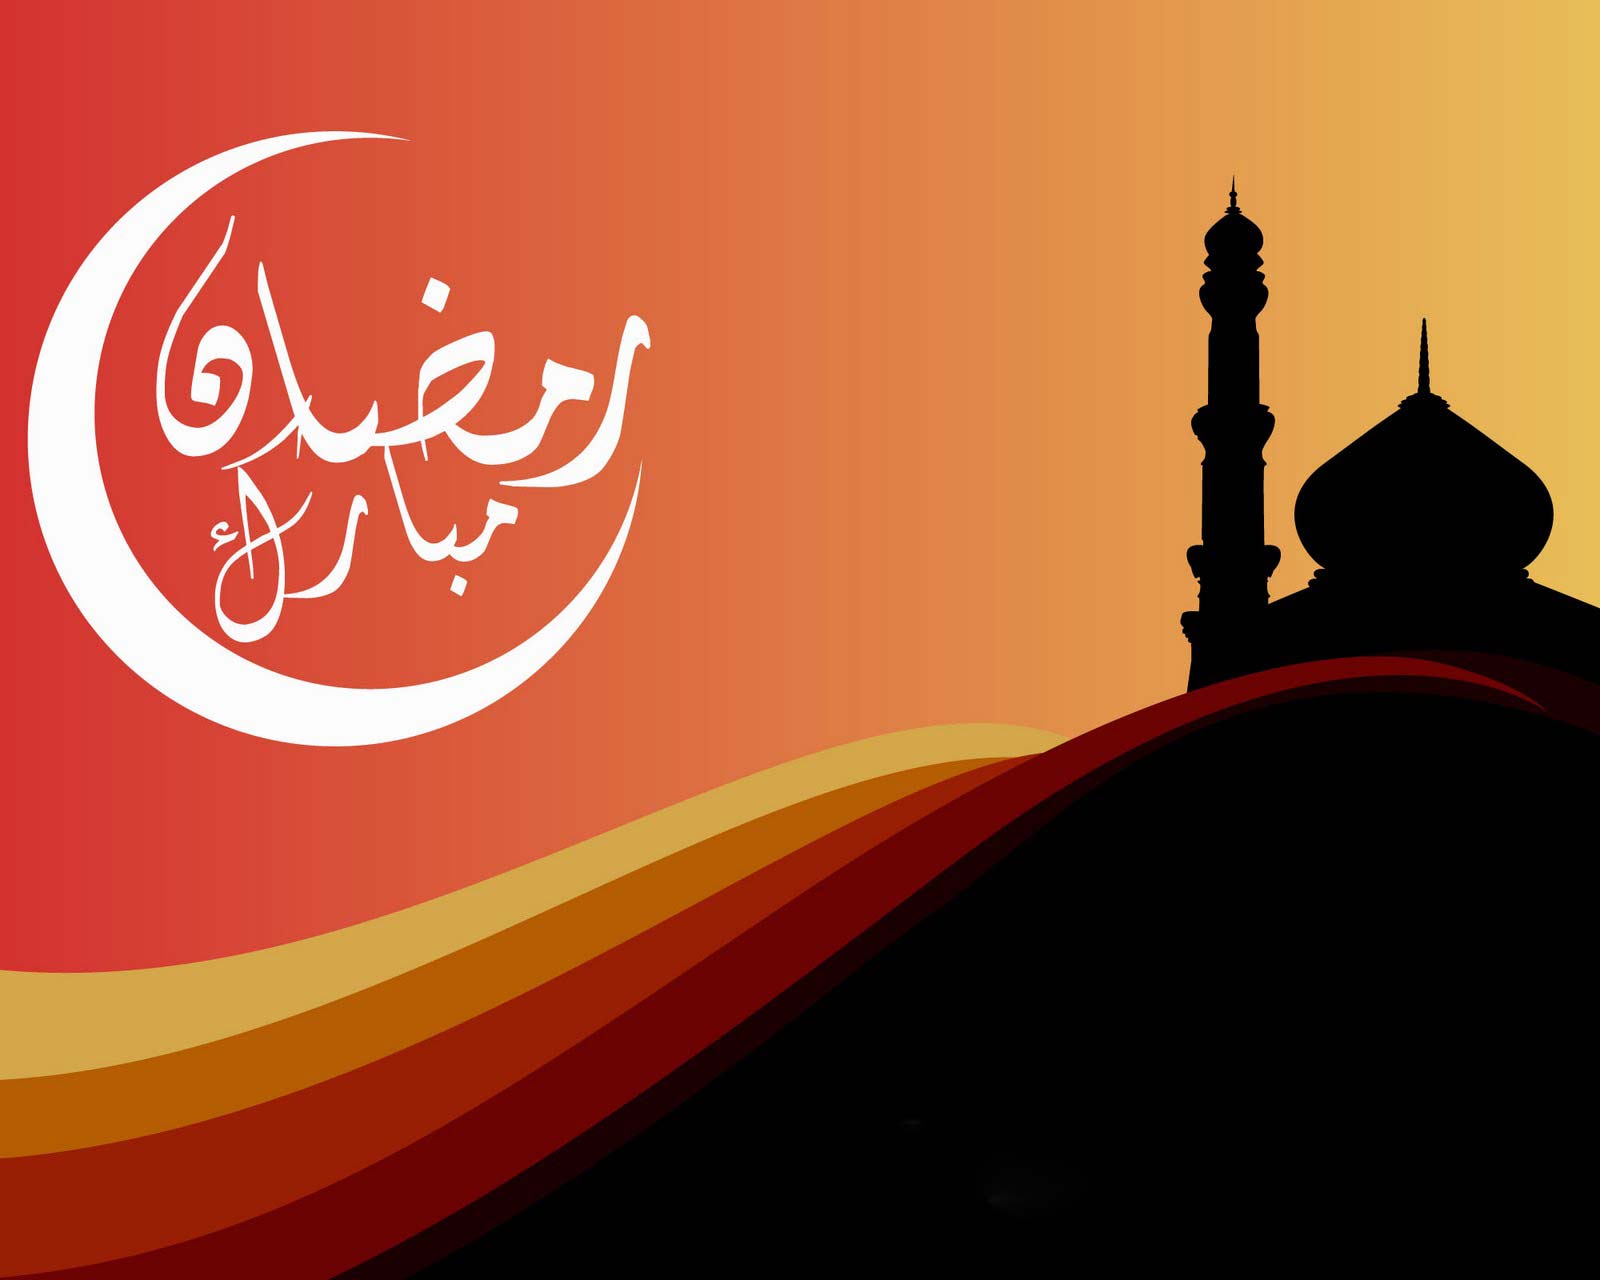 fond d'écran ramadan de haute qualité,rouge,mosquée,lieu de culte,police de caractère,illustration